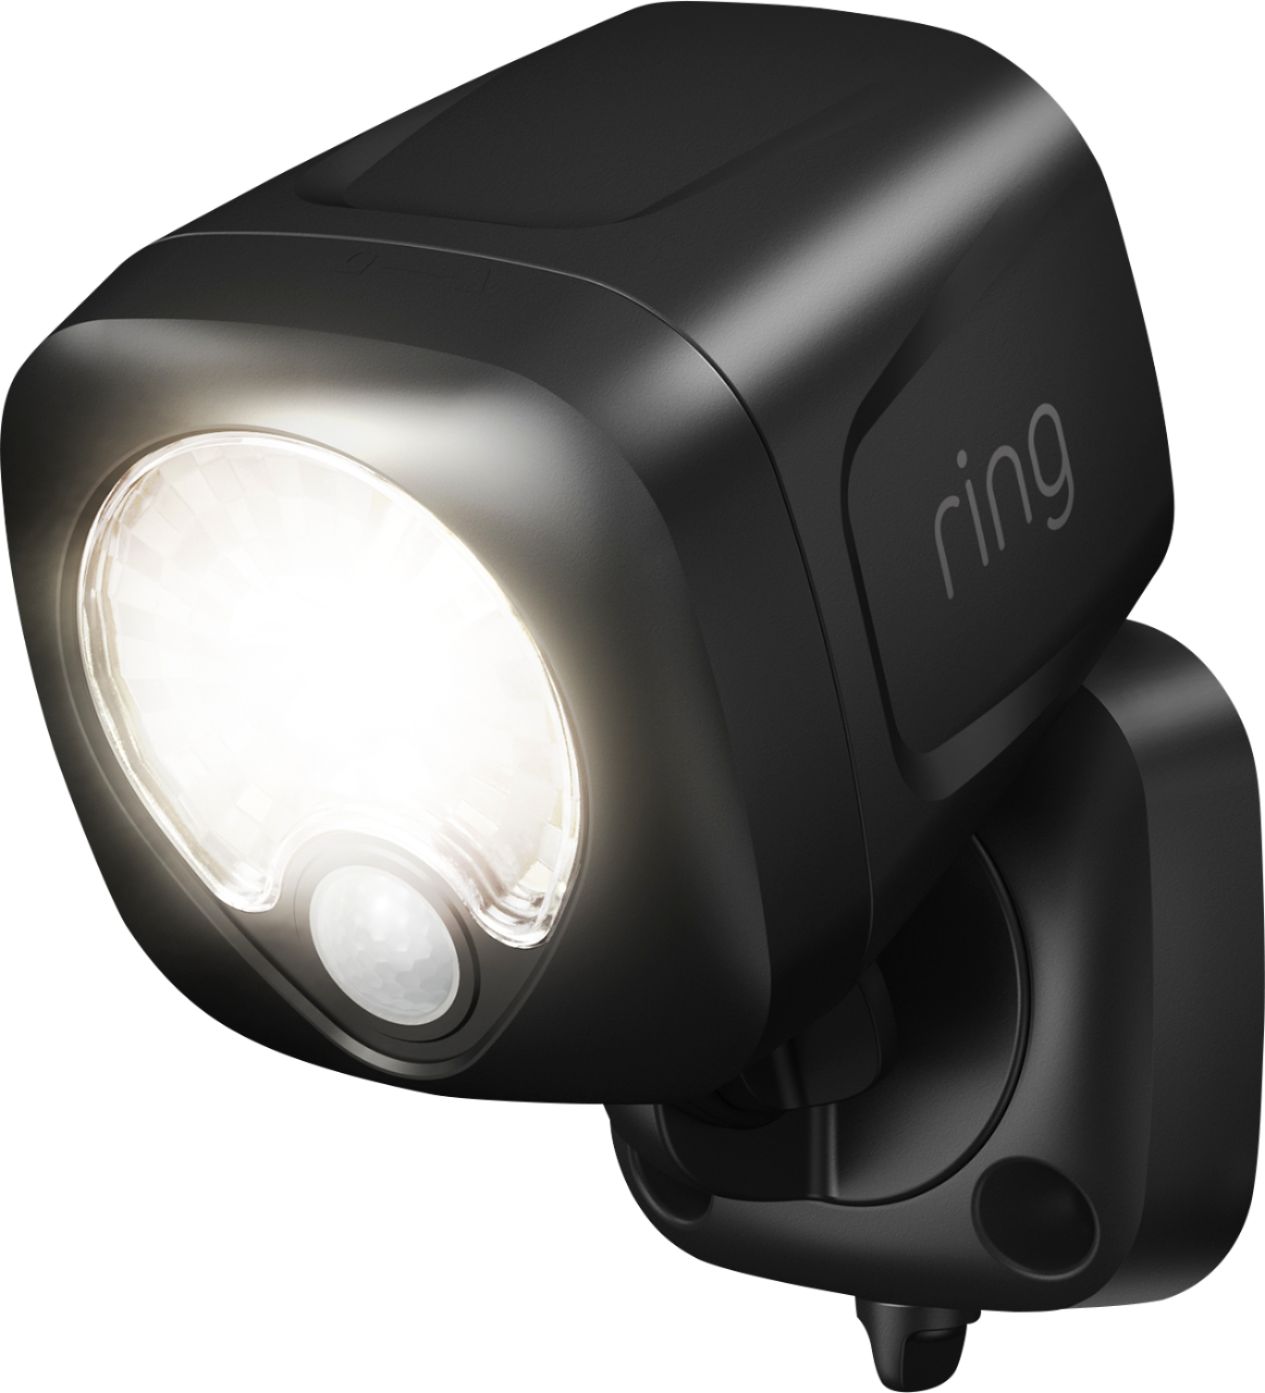 Ring Battery-Powered LED Smart Spotlight Black 5B11S8-BEN0 Best Buy